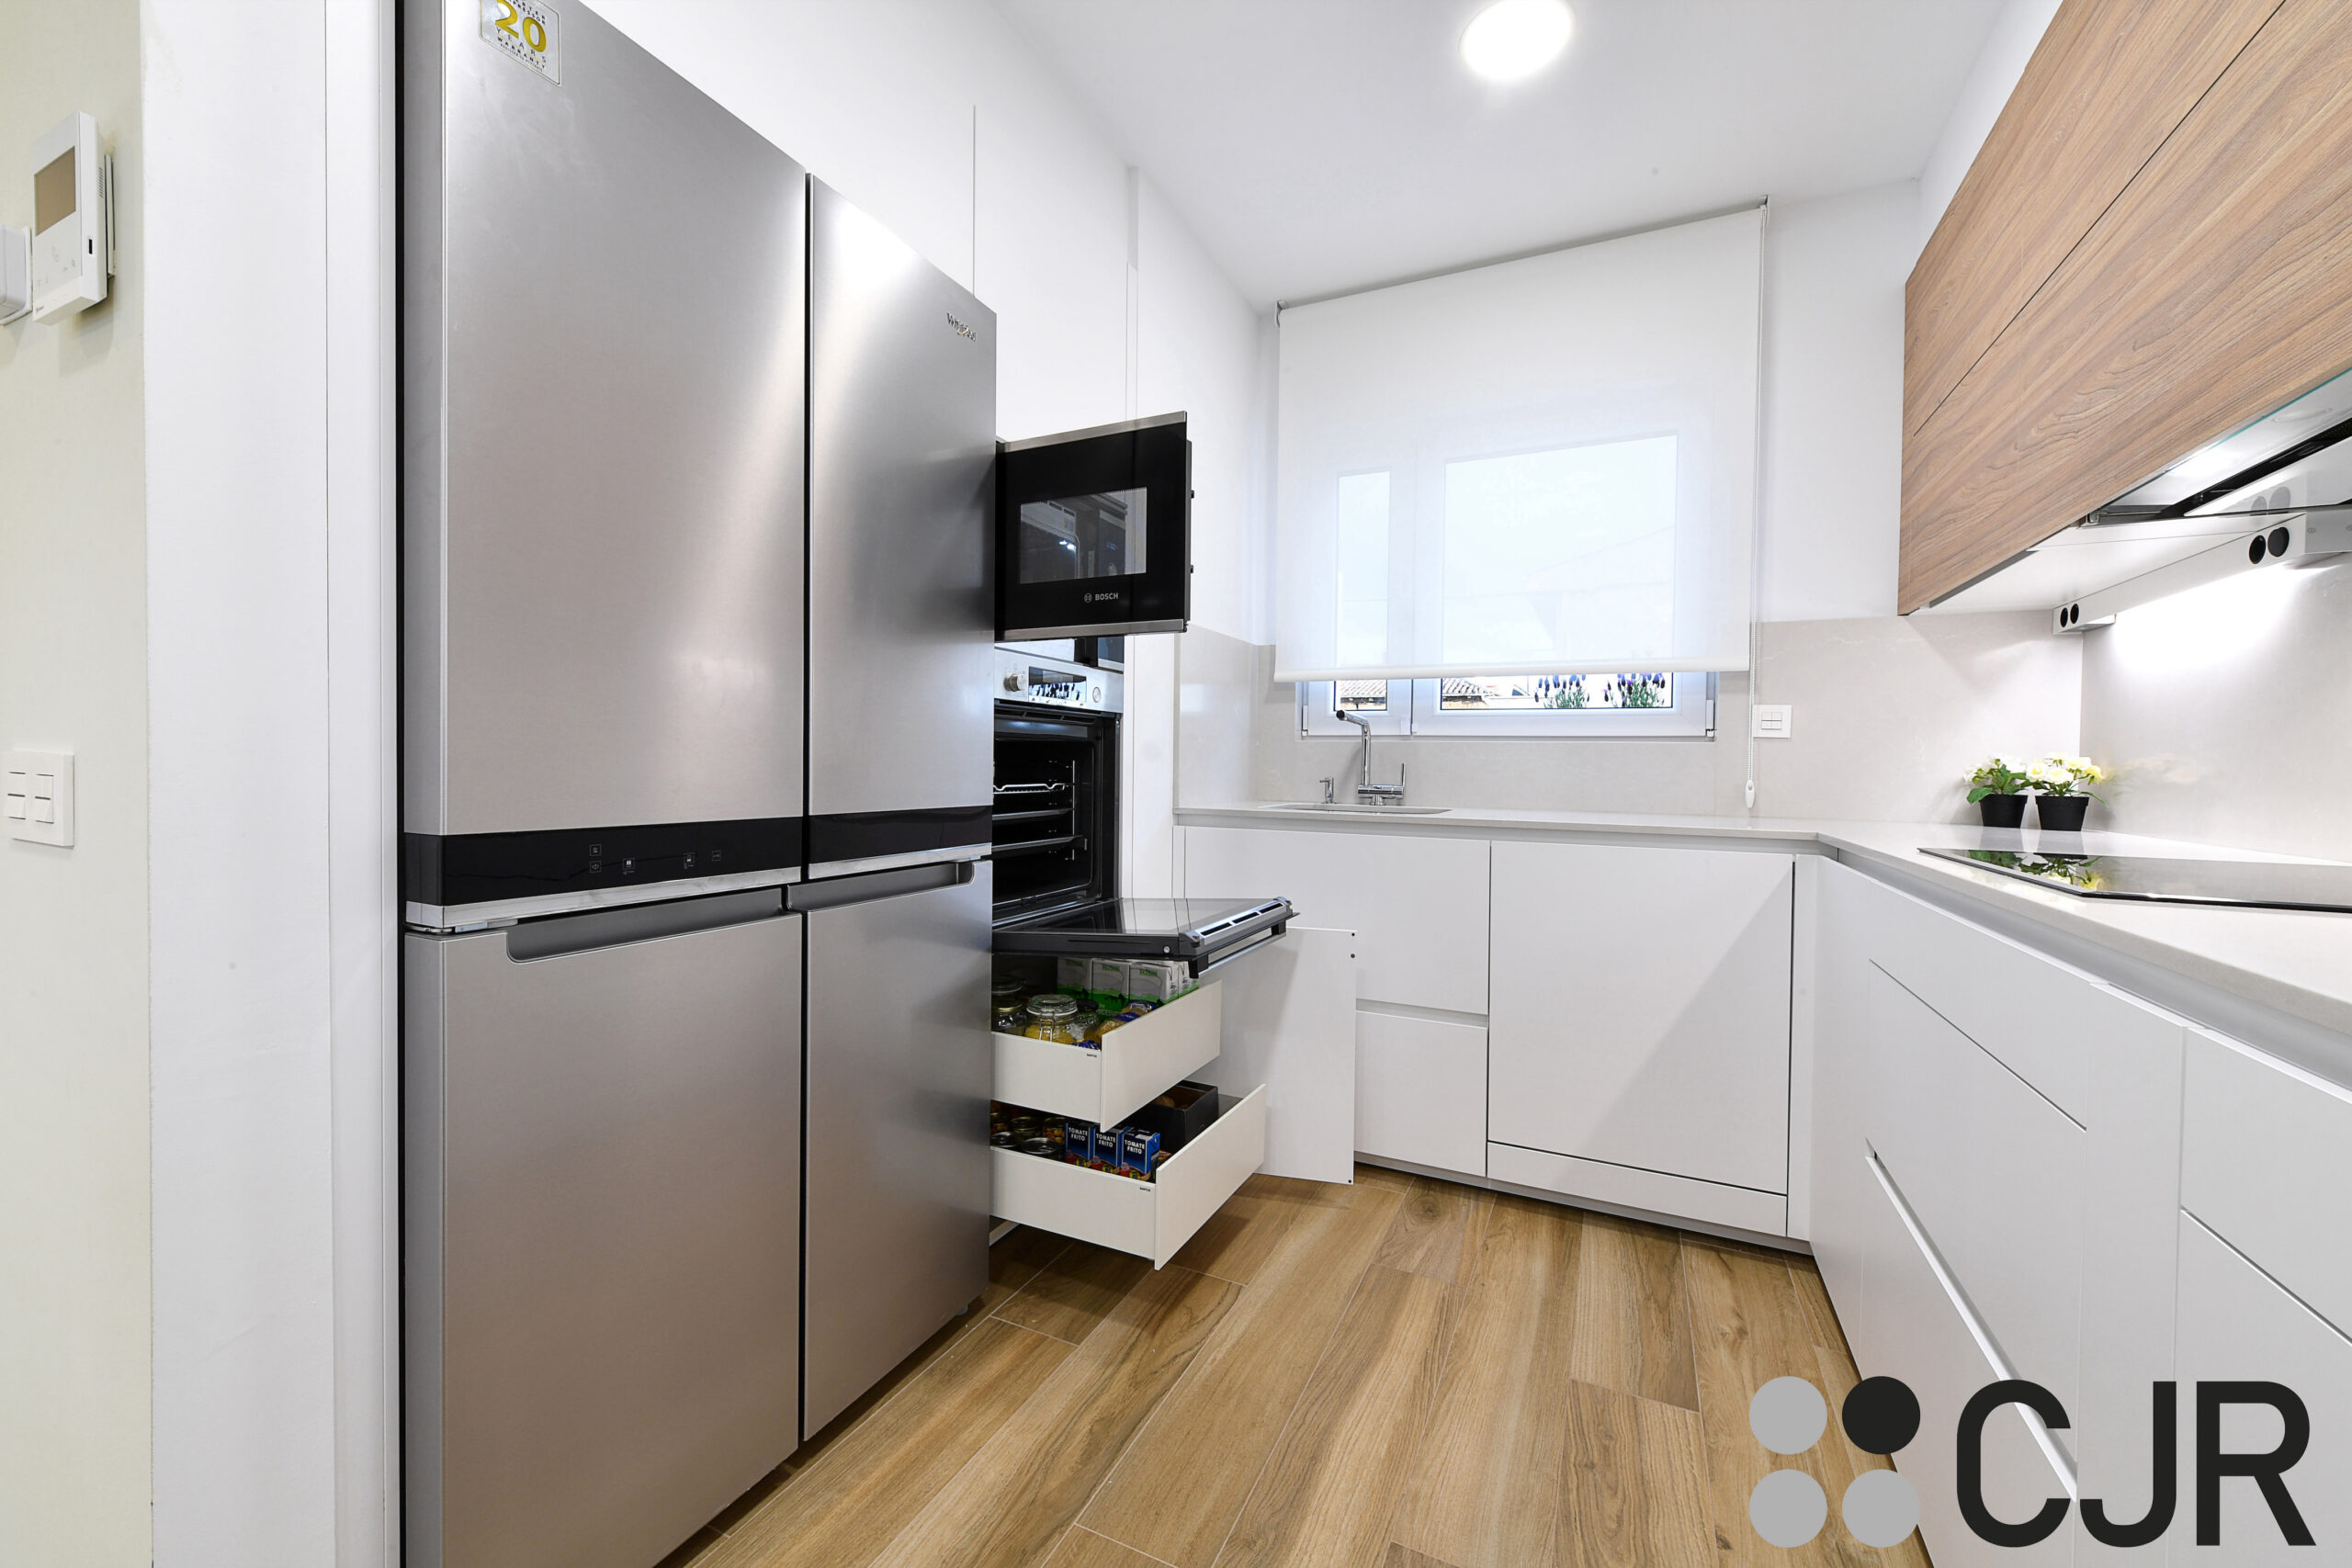 electrodomesticos bosch y cajones interiores en cocina blanca y madera cjr